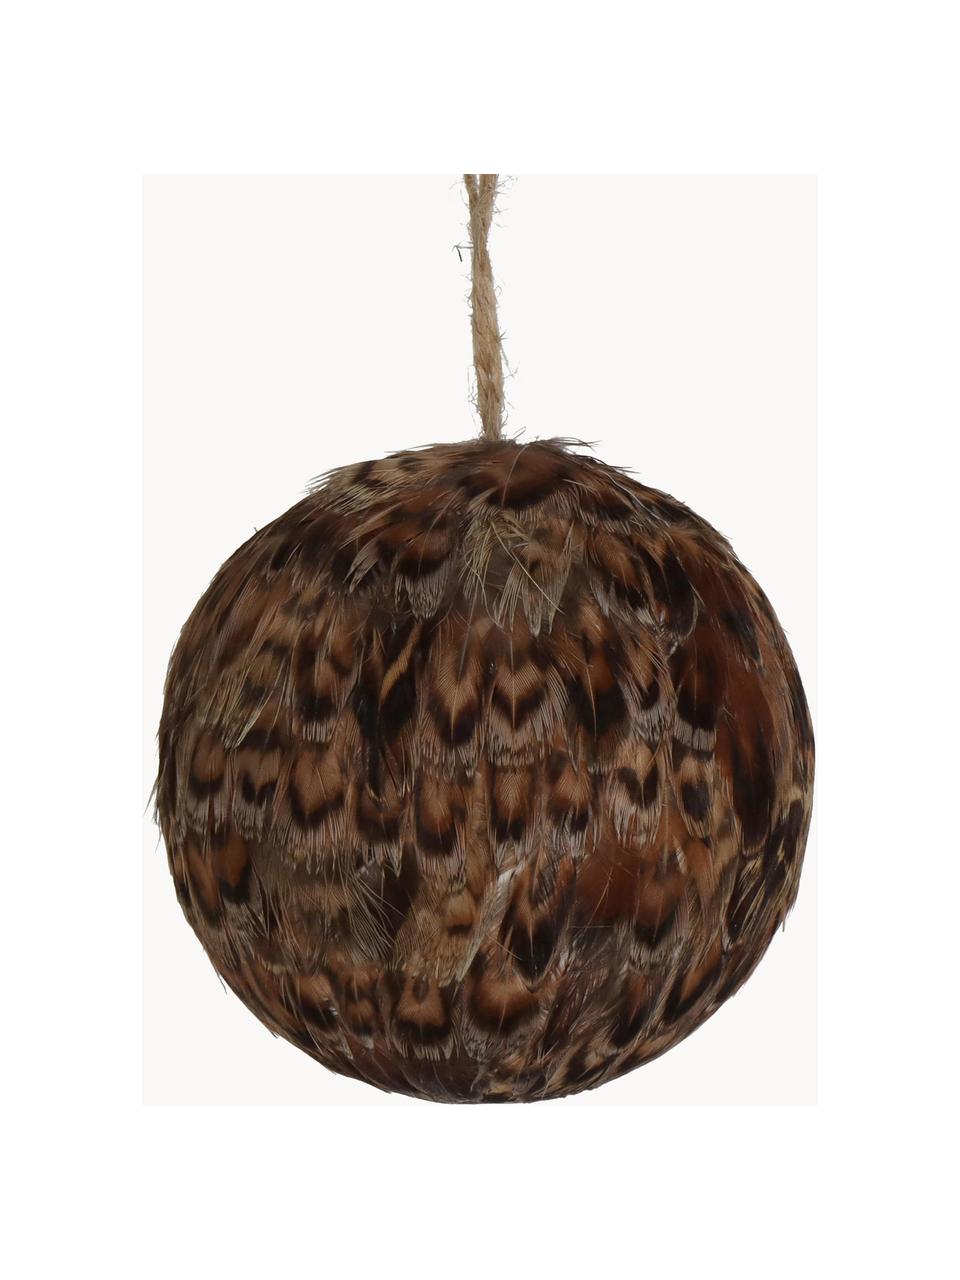 Ozdoby na stromeček Feather Ball, 2 ks, Peří, Odstíny hnědé, Ø 8 cm